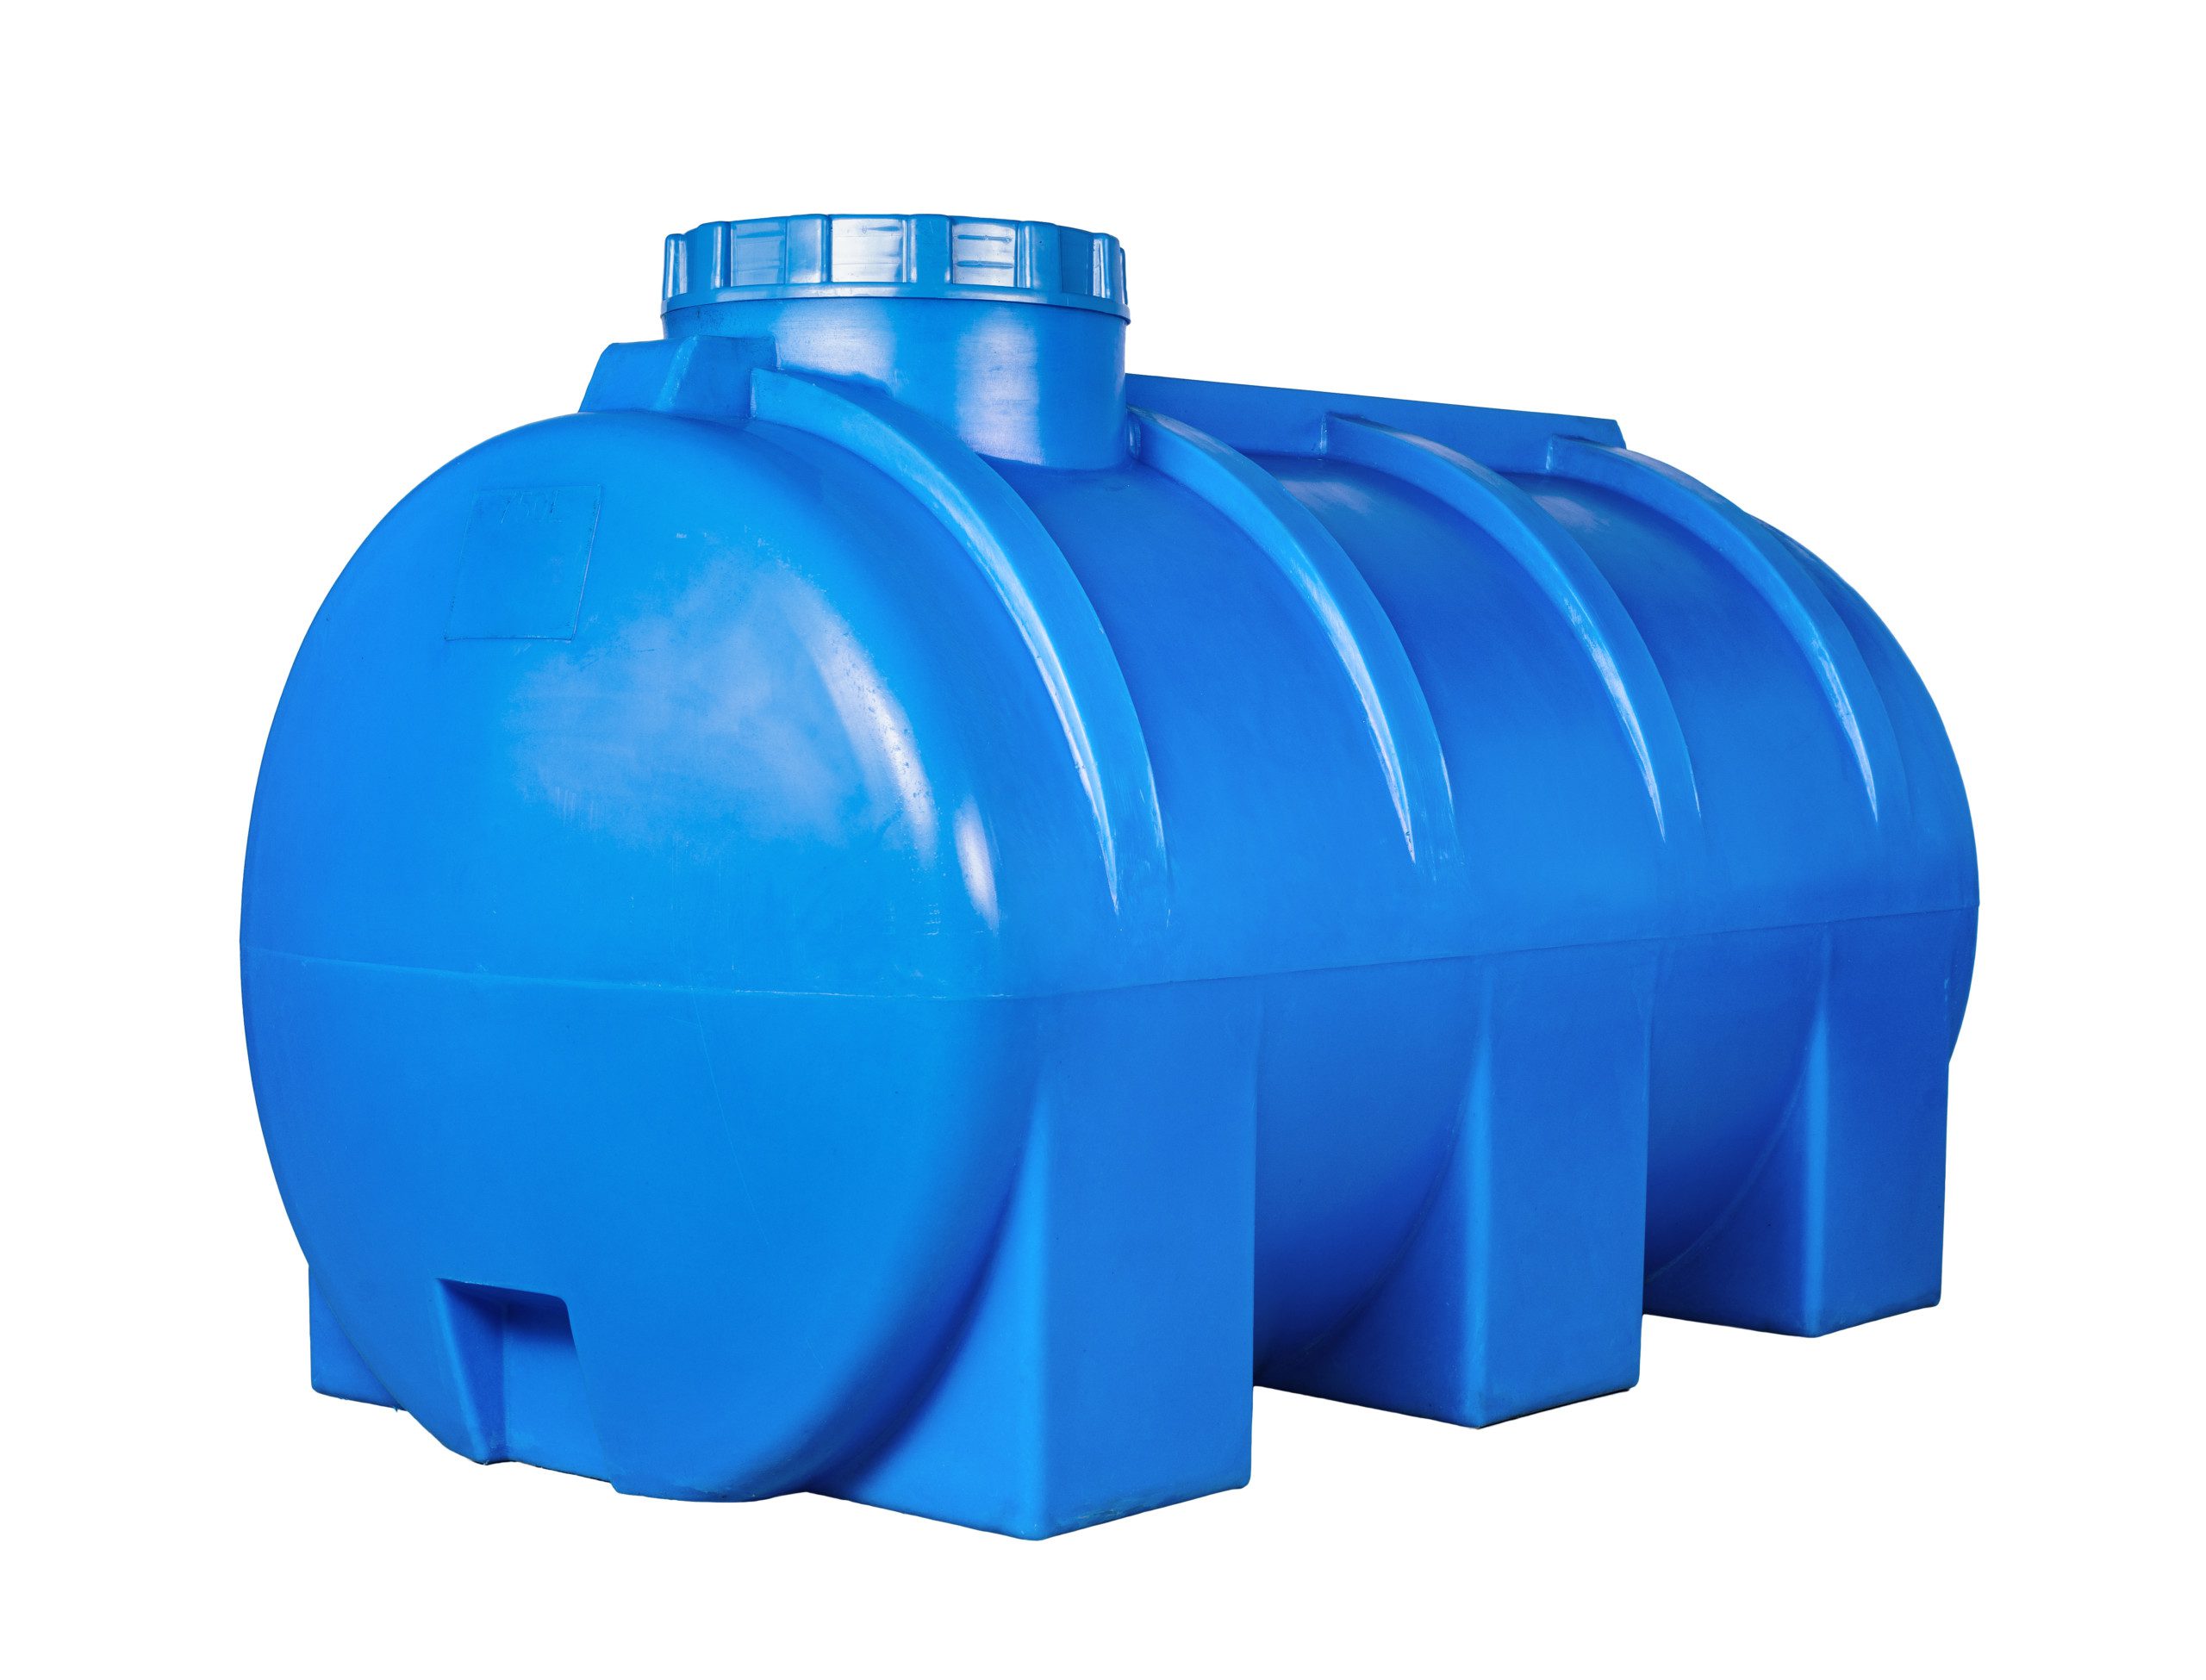 Imagem de uma cisterna de plástico azul em um fundo todo branco.